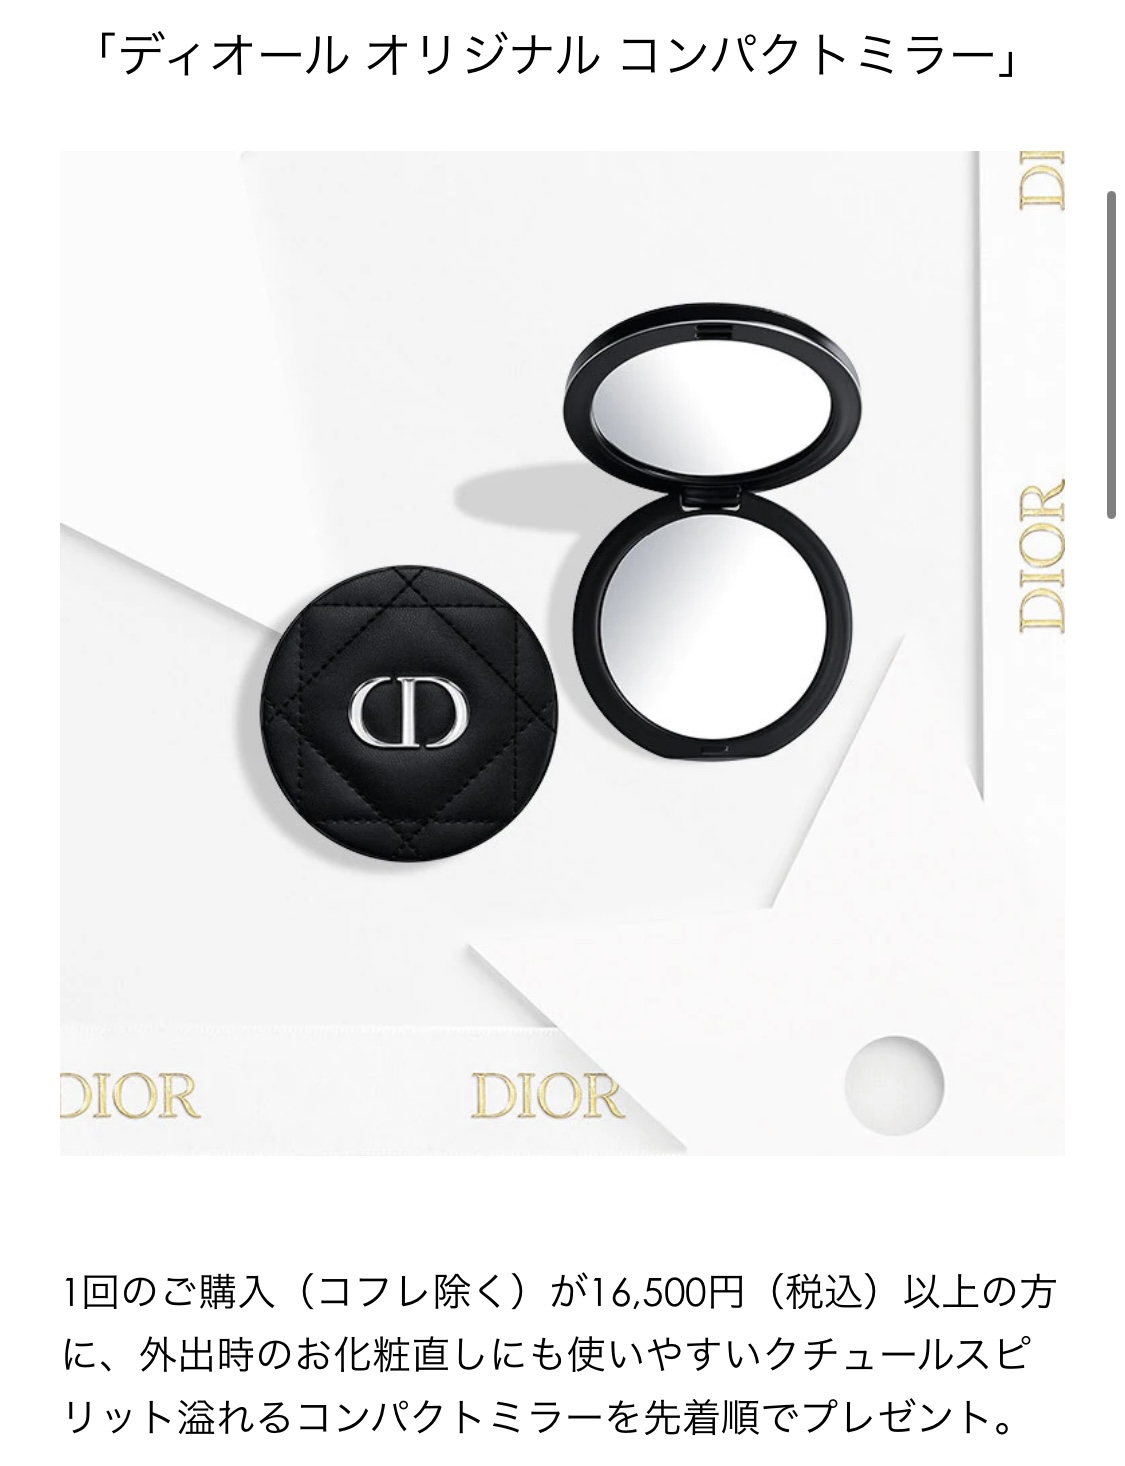 2022年7月Diorノベルティは「ディオール オリジナル コンパクトミラー」らしいよ【Dior】 | TABI! COSMETICS!